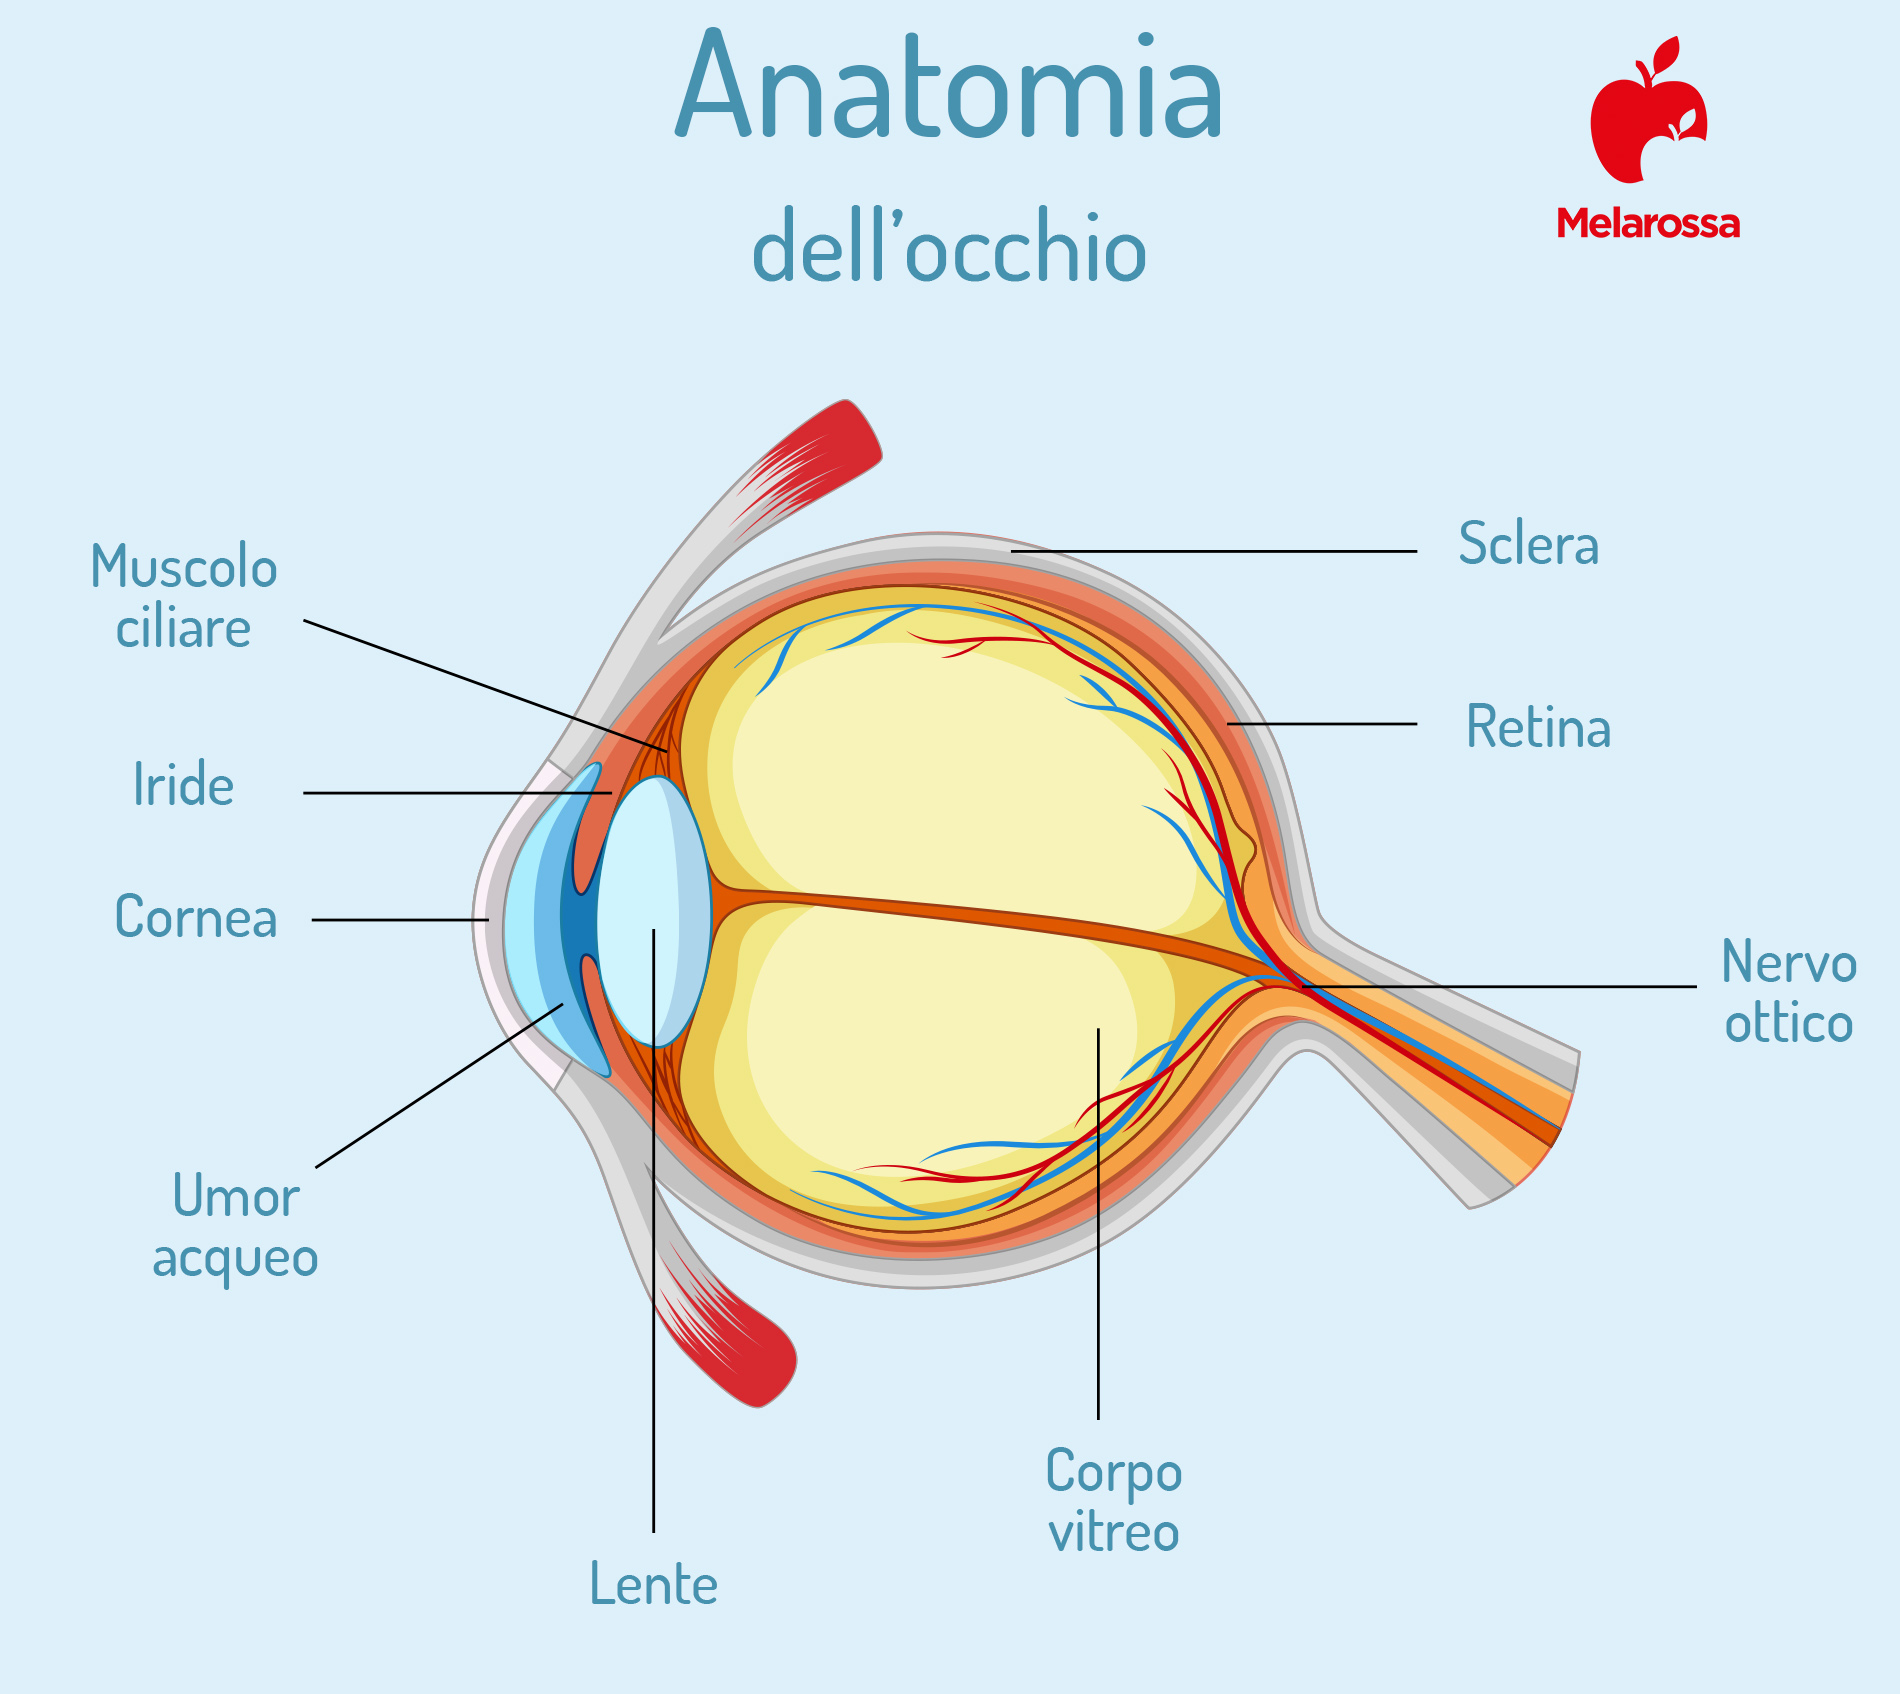 cornea: anatomia dell'occhio 